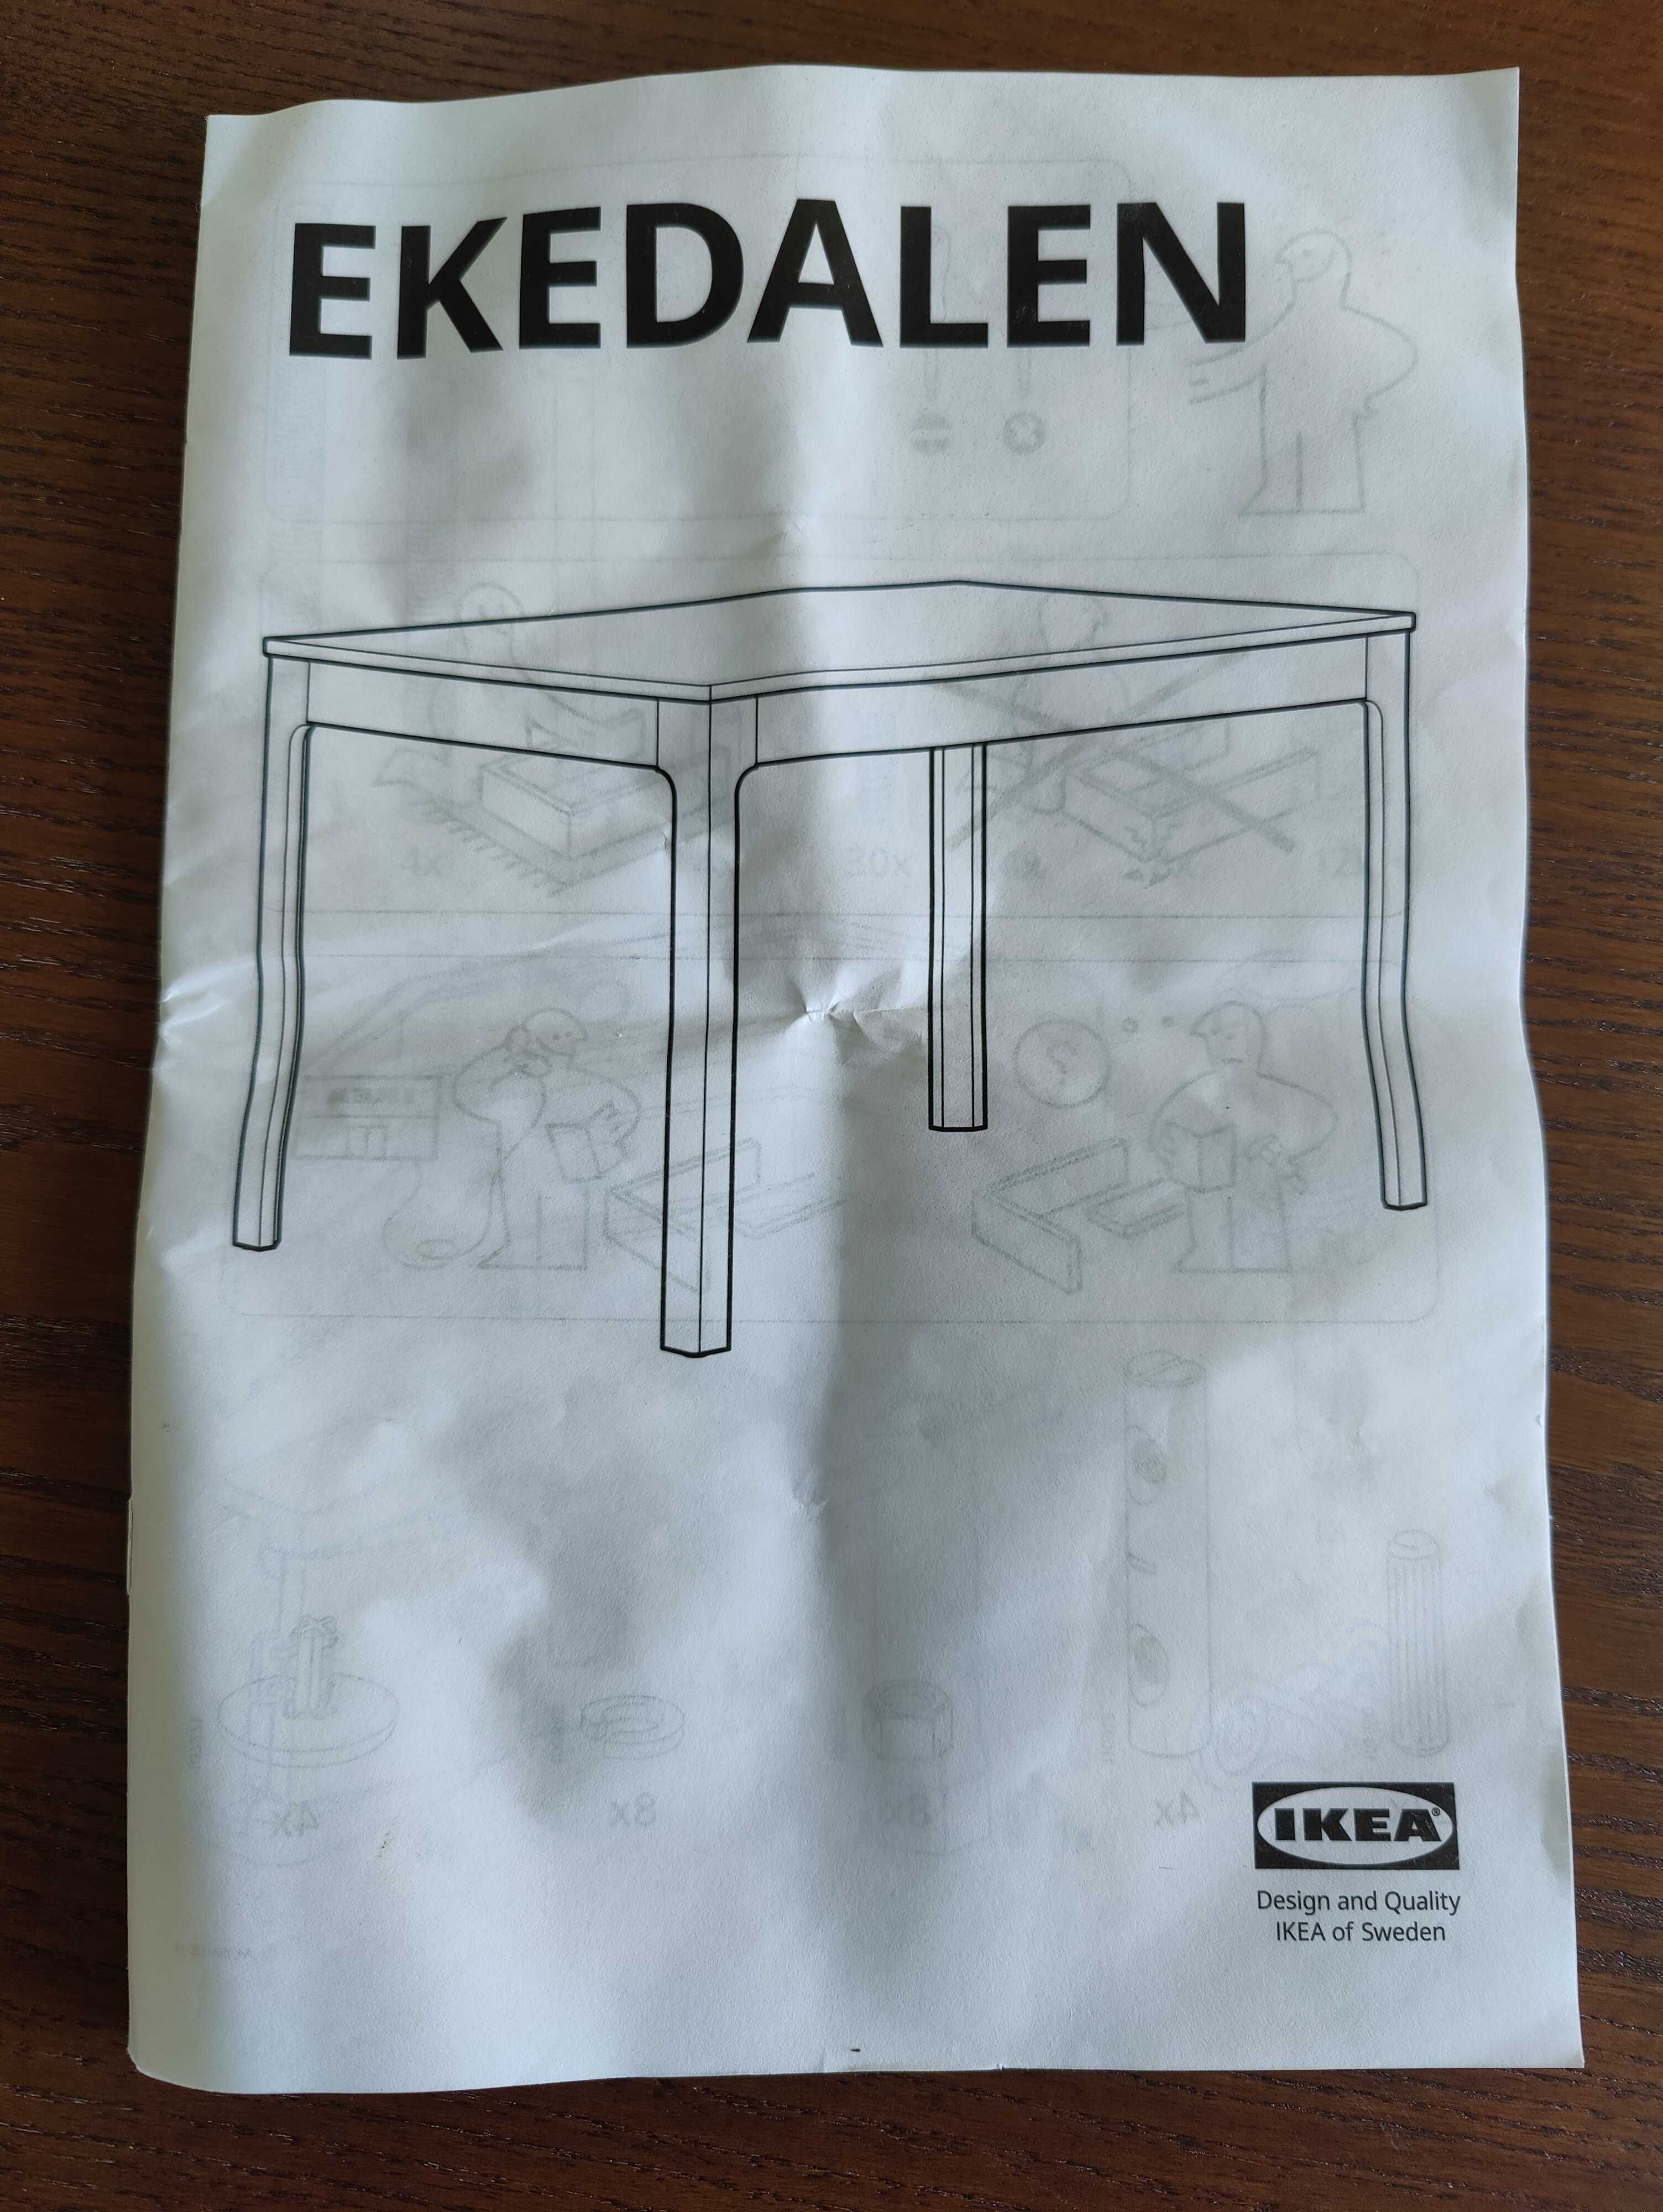 Mesa castanha extensivel IKEA - Ekedalen - 120/180 x 80 cm